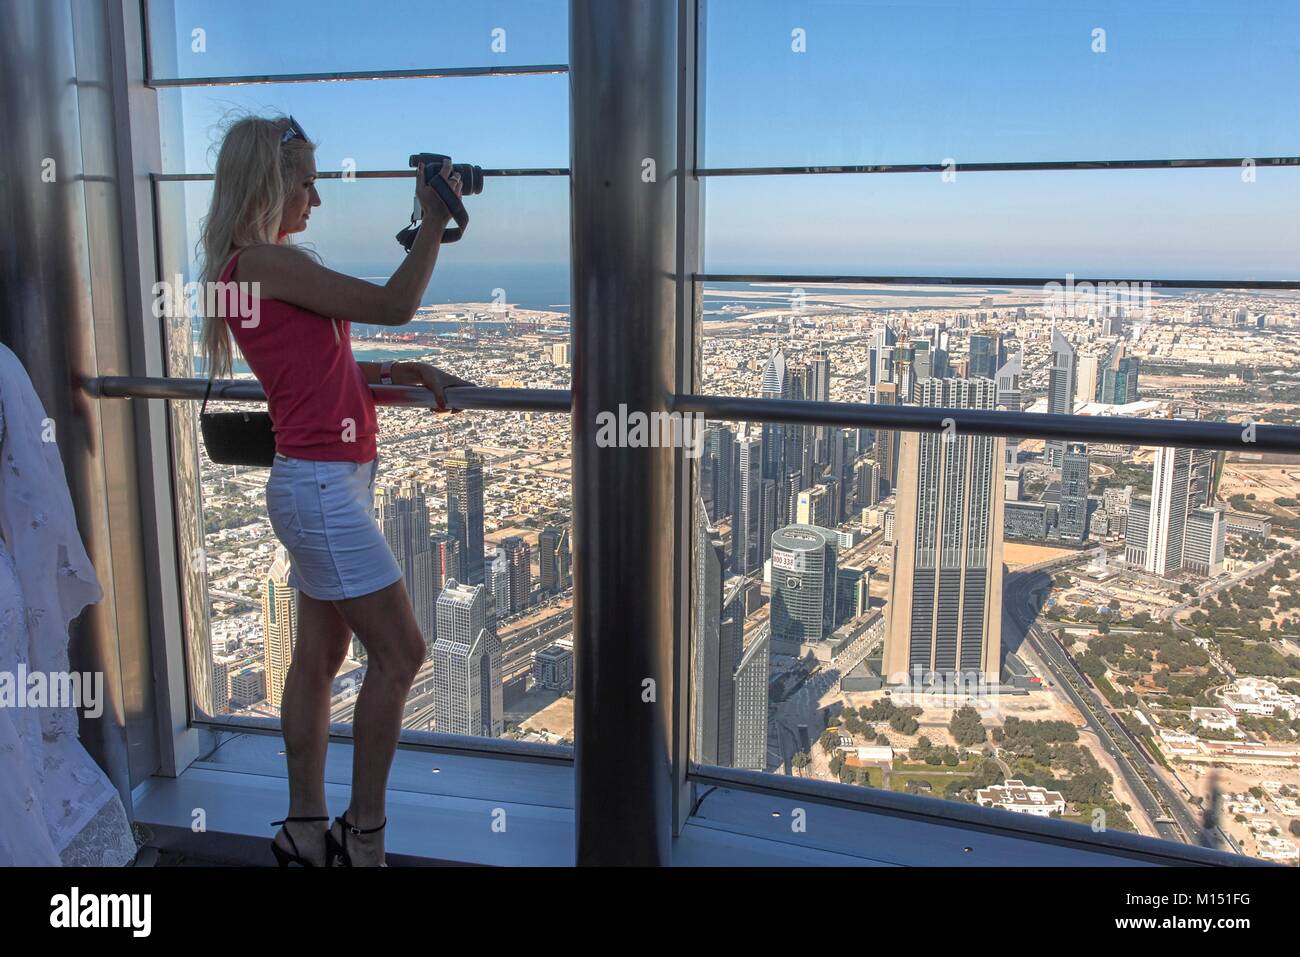 Emirats Arabes Unis, Dubai, les tours de la Sheikh Zayed Road à partir du haut (Burj Khalifa) Banque D'Images